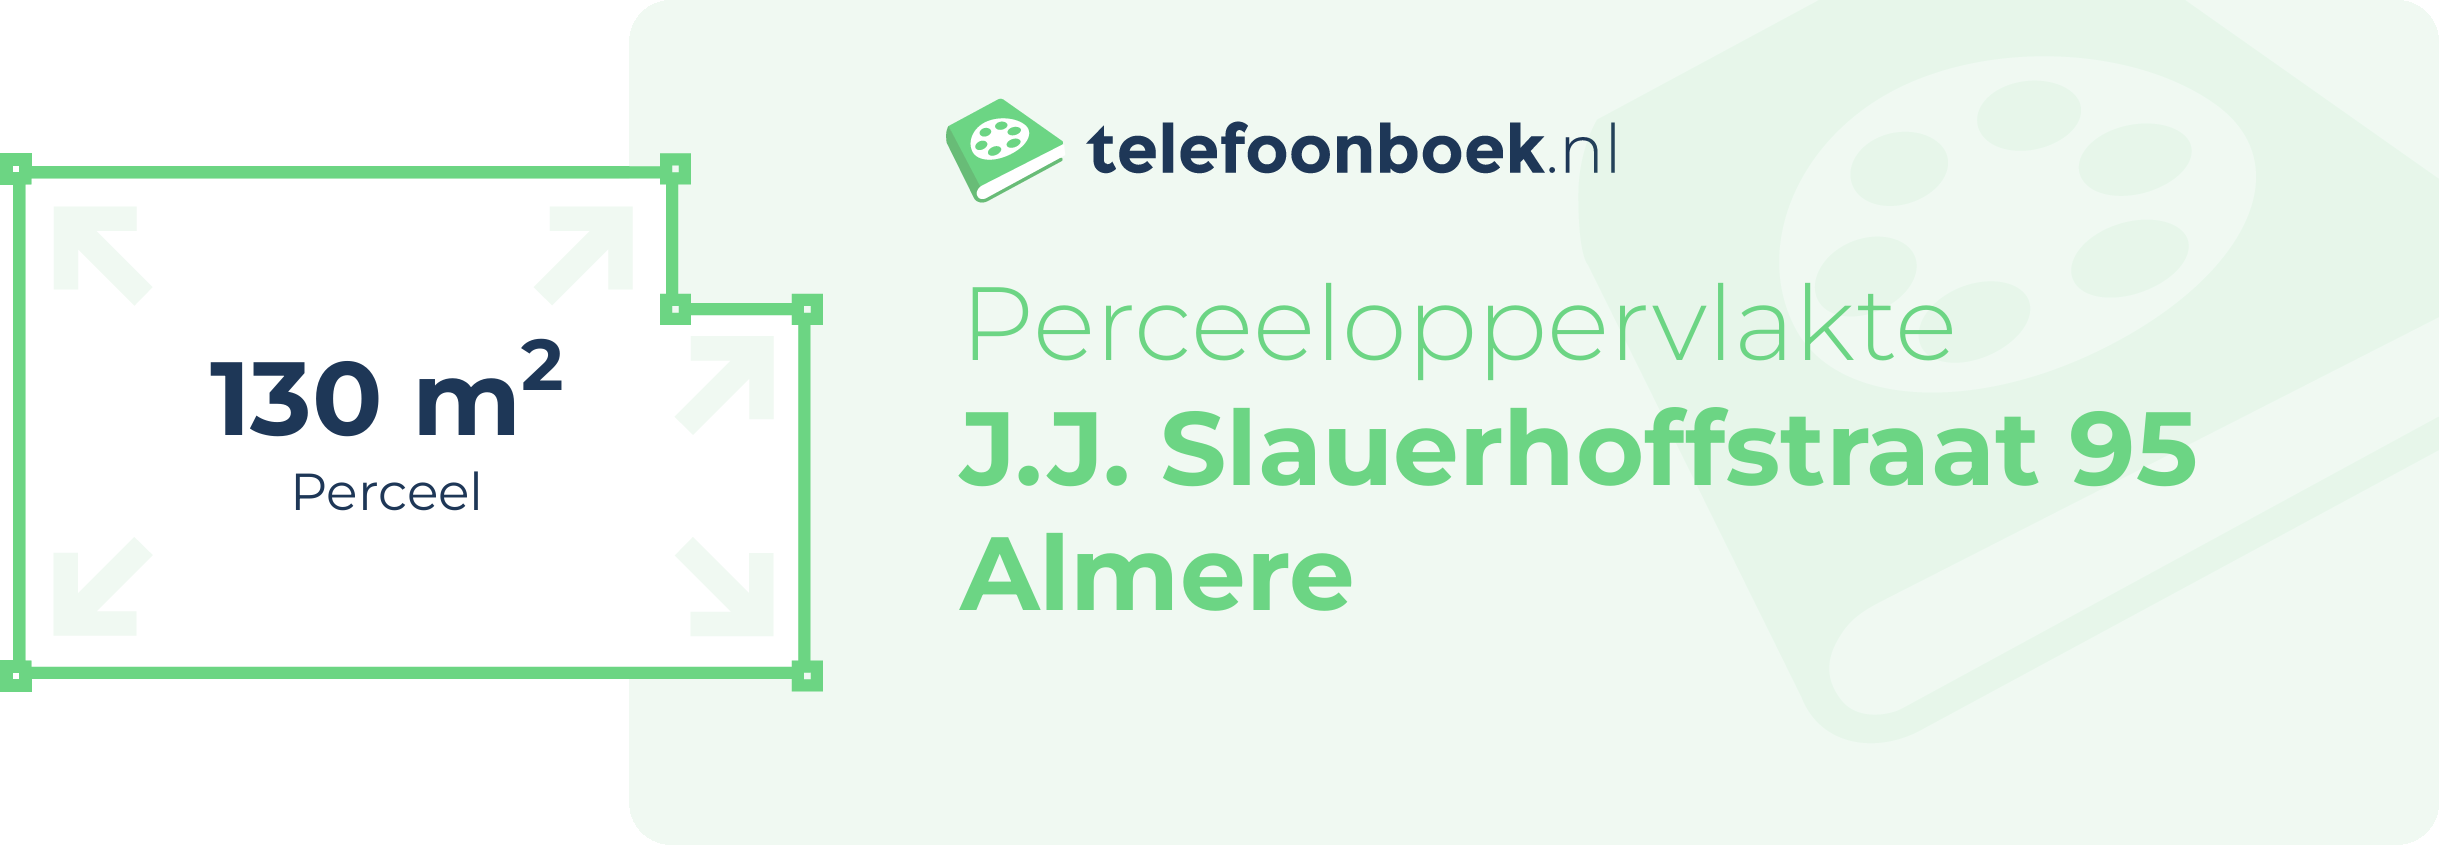 Perceeloppervlakte J.J. Slauerhoffstraat 95 Almere